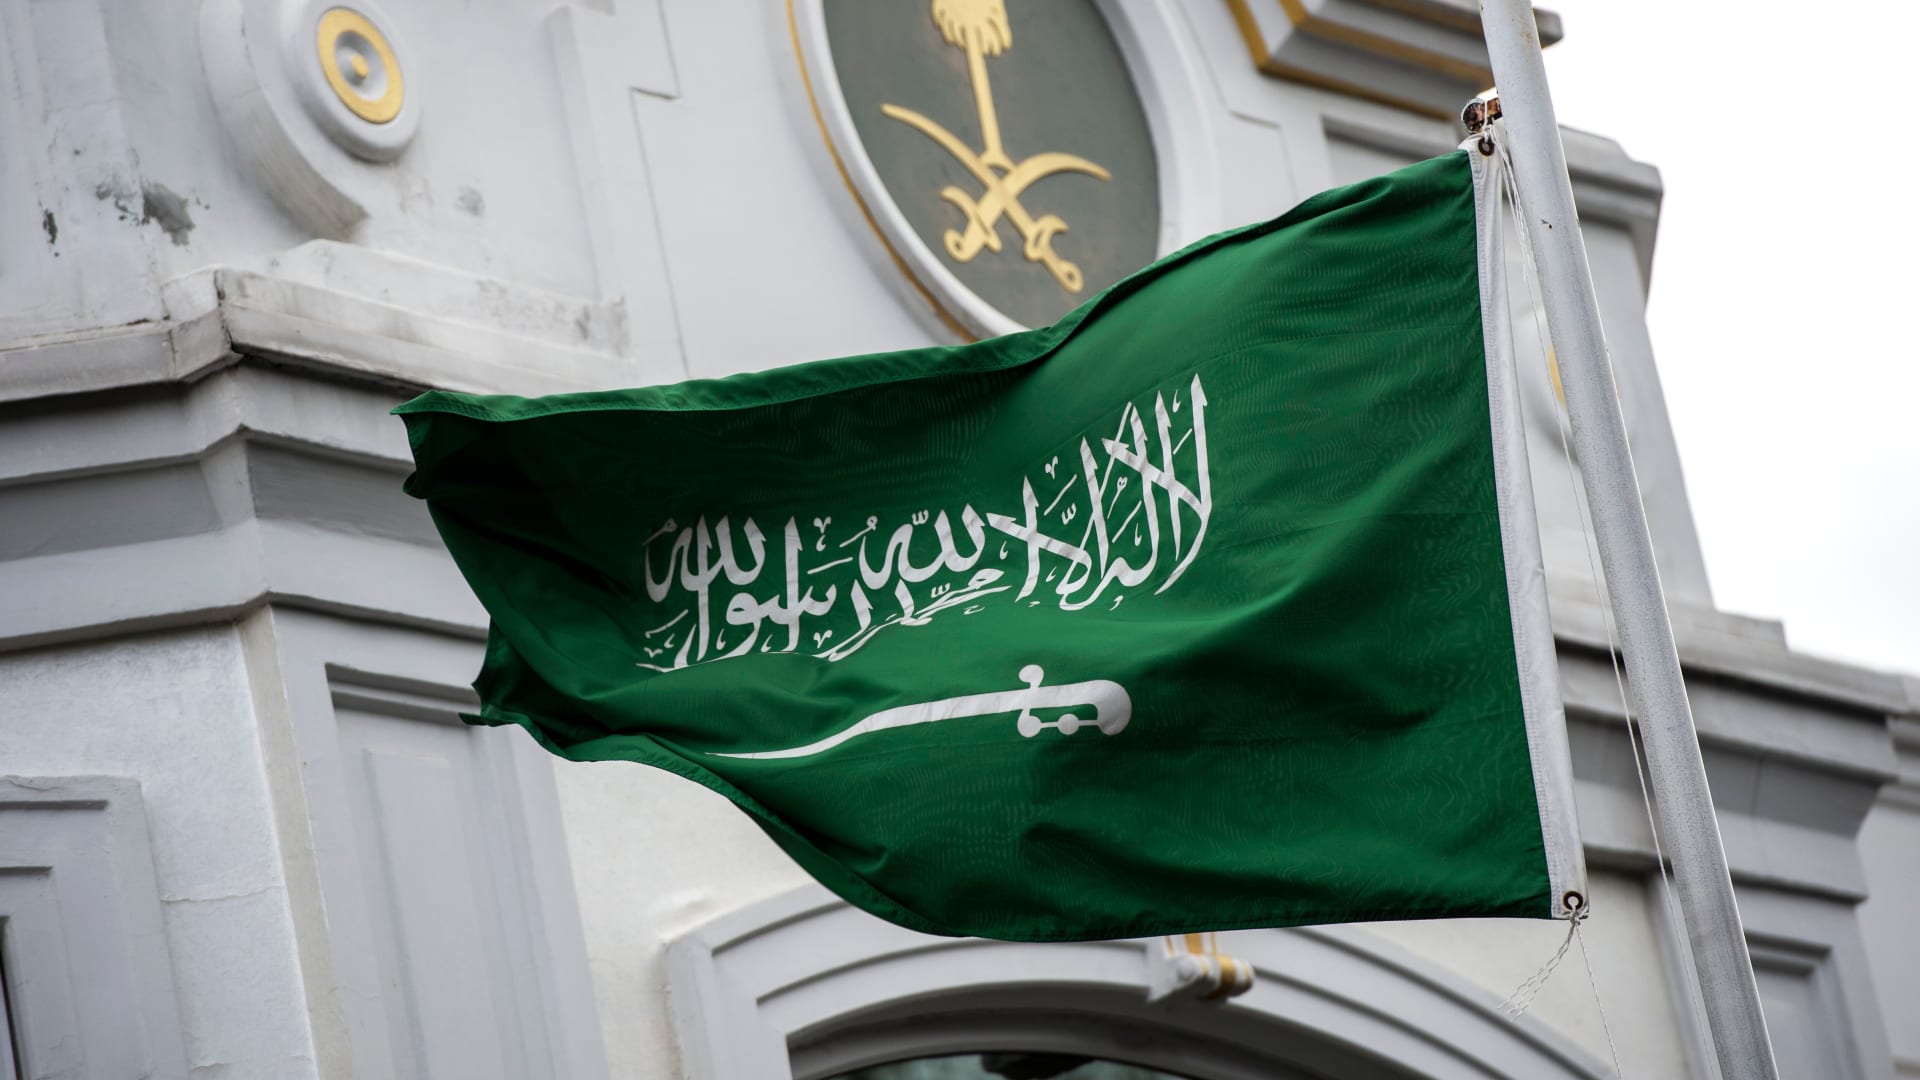 السعودية تصدر التعليق الأول على الإساءة للنبي محمد من جانب المتحدثة باسم الحزب الحاكم في الهند